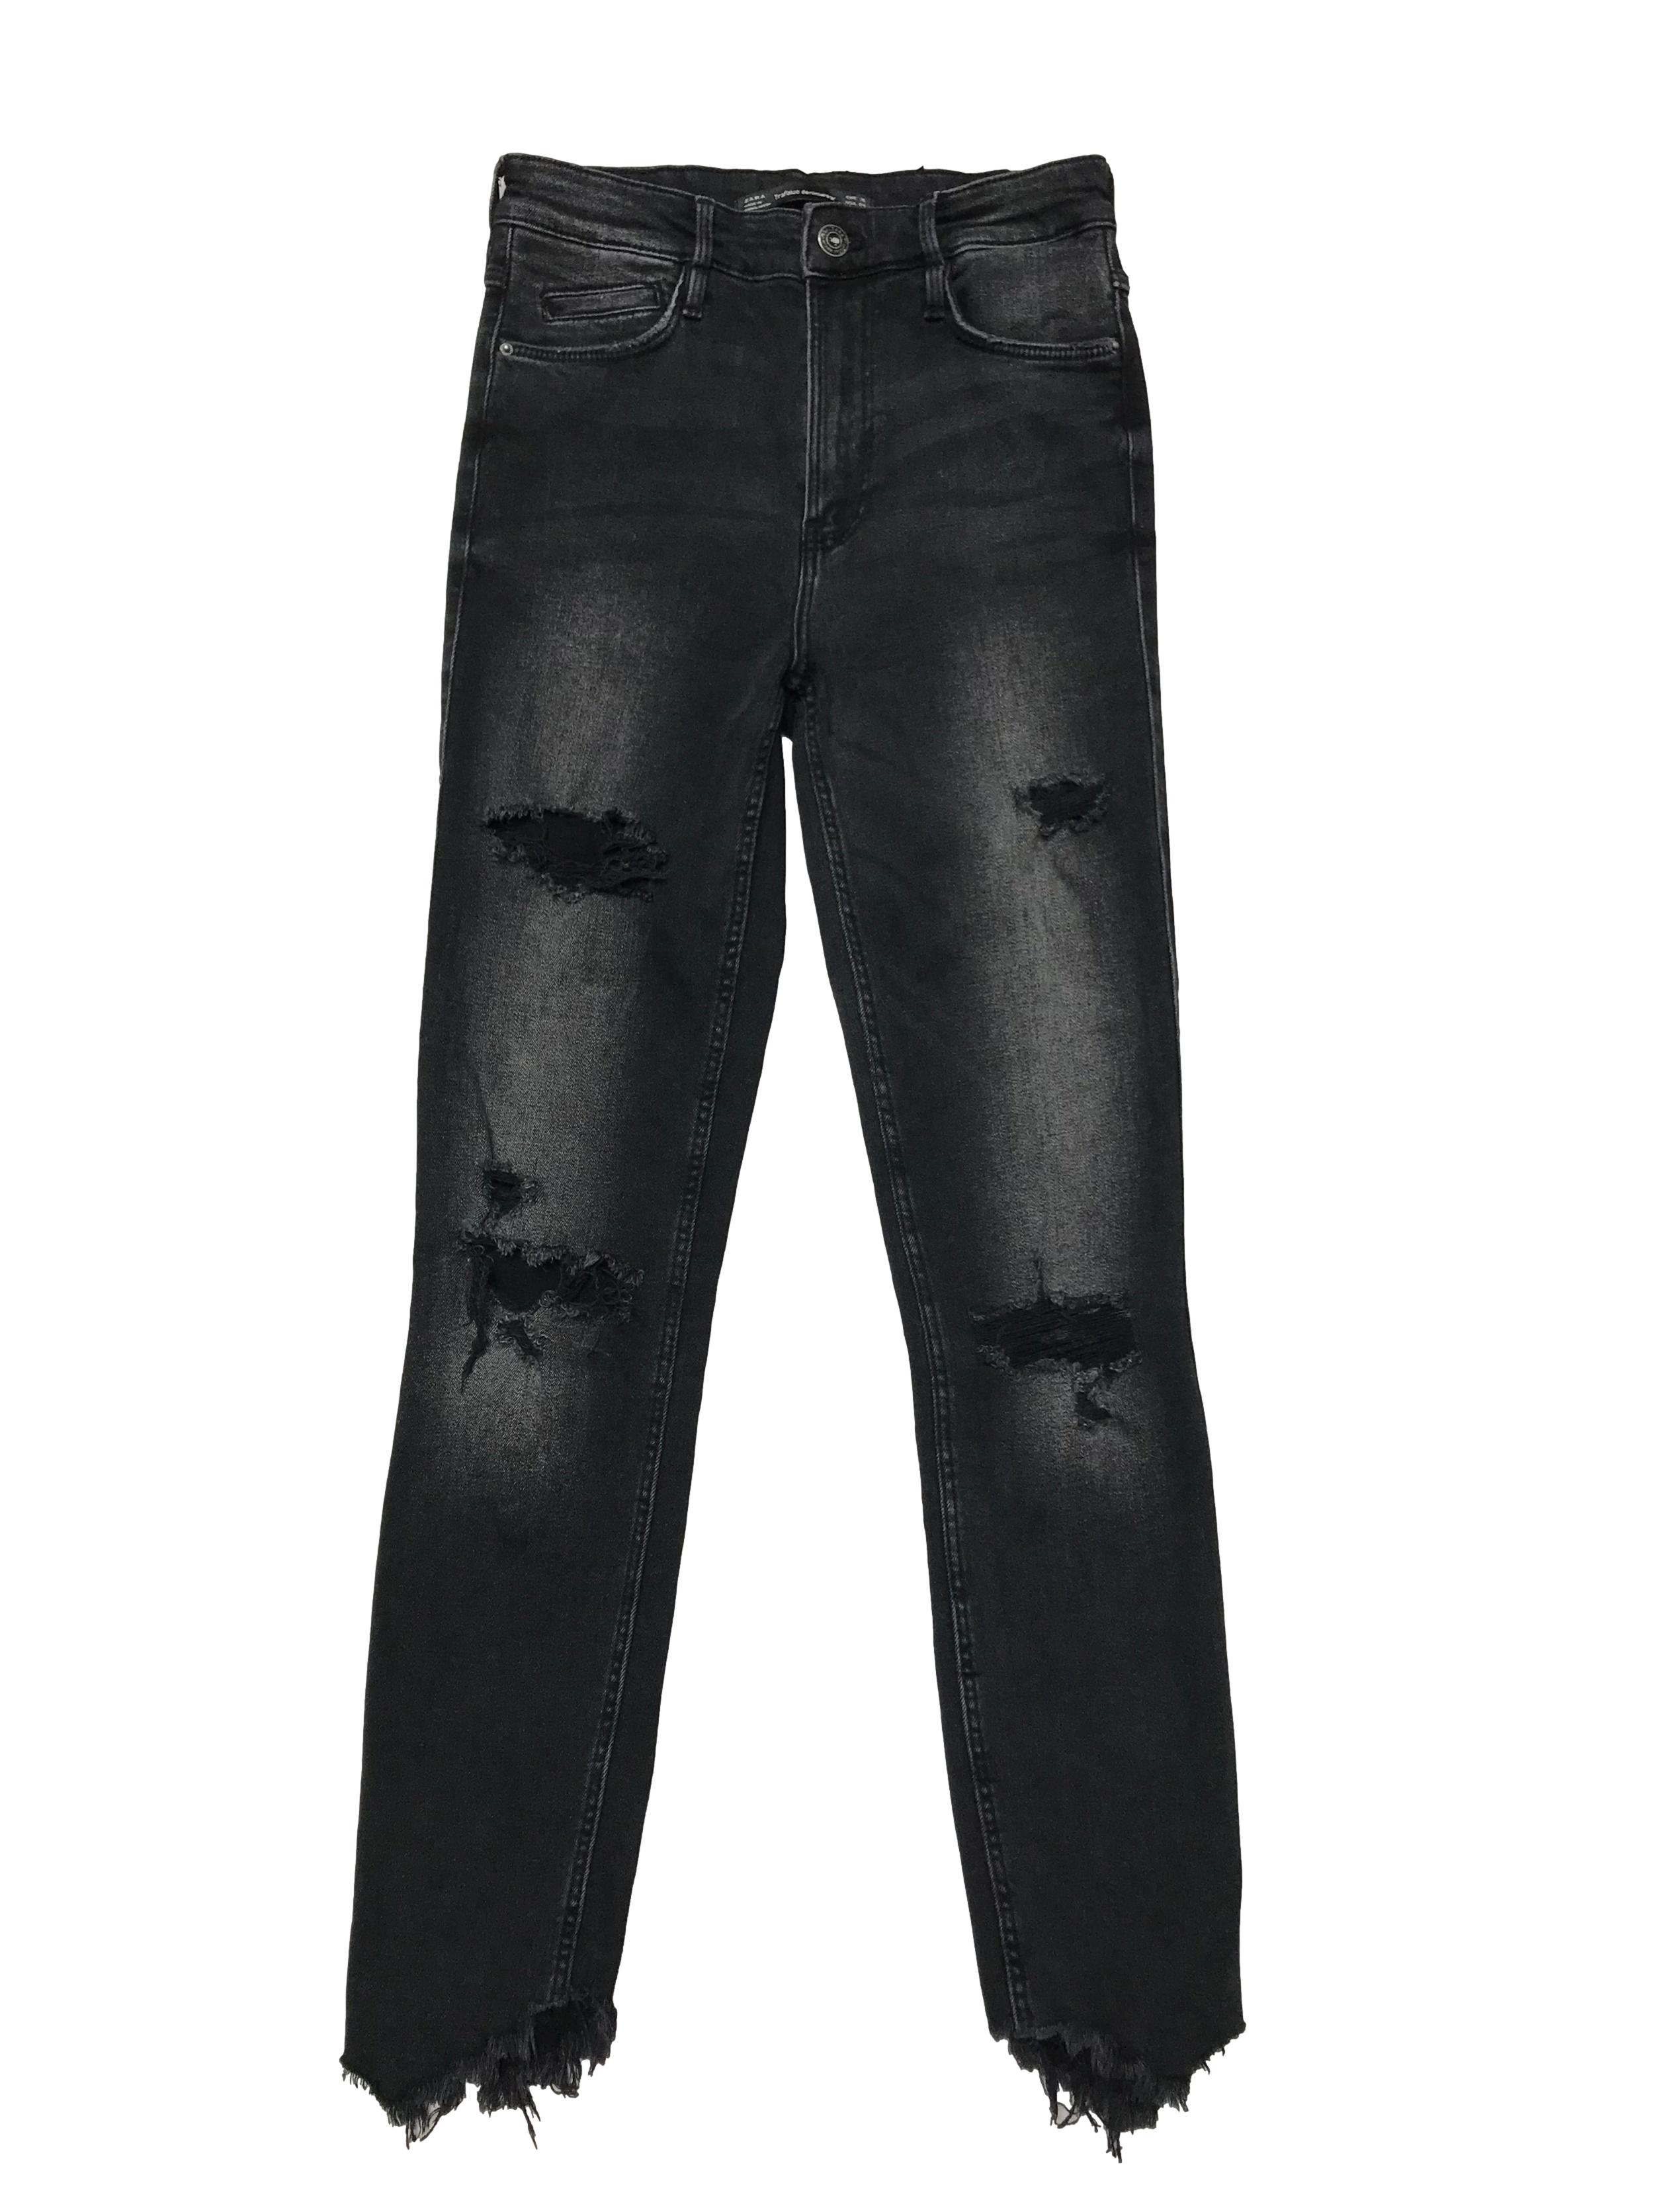 Skinny jean Zara a la cintura, negro efecto lavado con rasgado en las piernas y desflecado en basta. Cintura 62cm sin estirar Largo 95cm